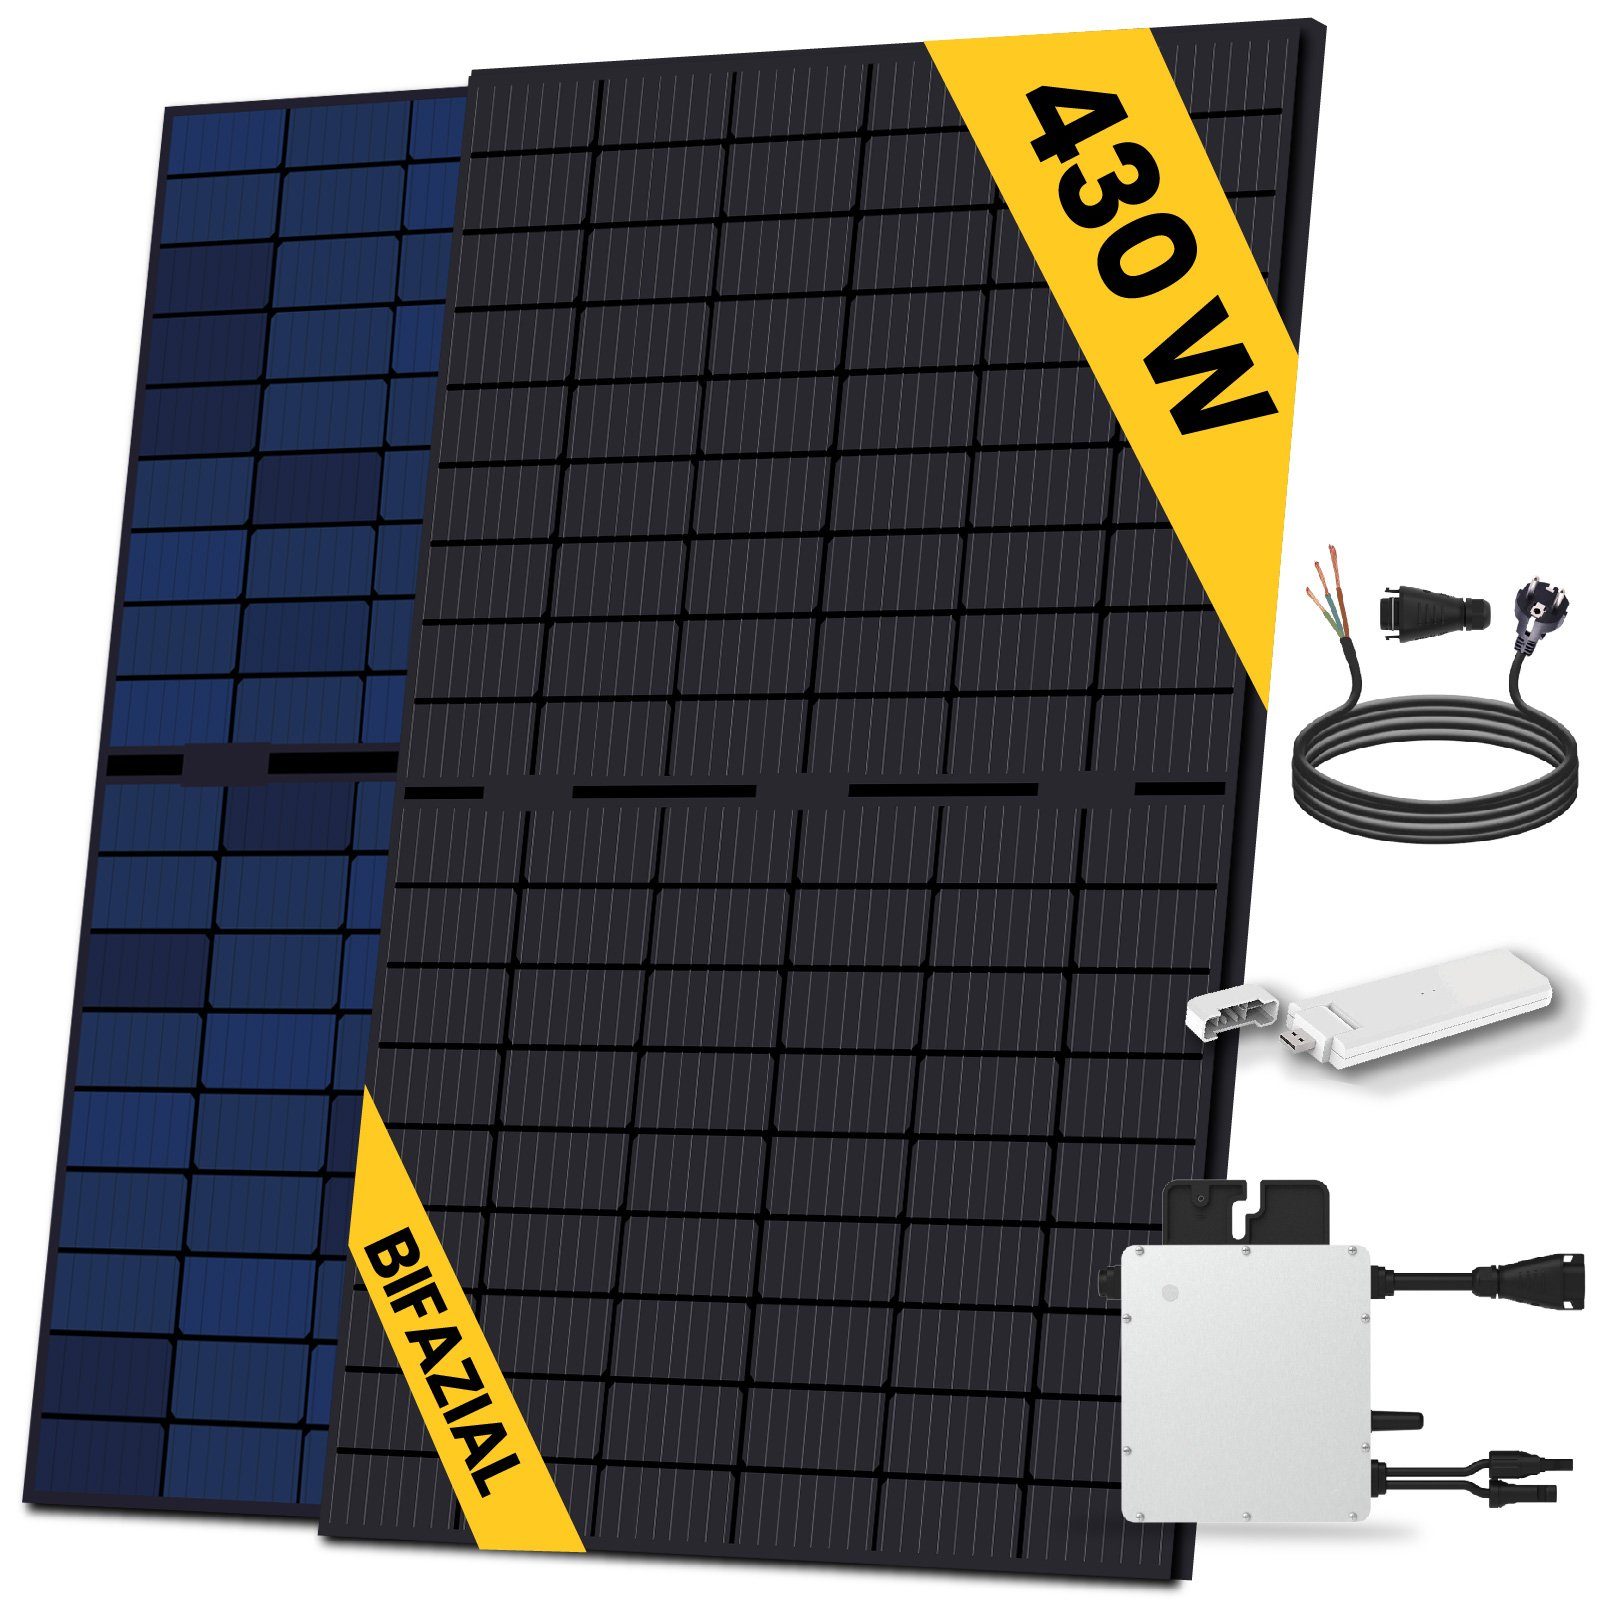 SOLAR-HOOK etm Solaranlage 430W Bifazial Balkonkraftwerk mit HMS-400-1T Wechselrichter